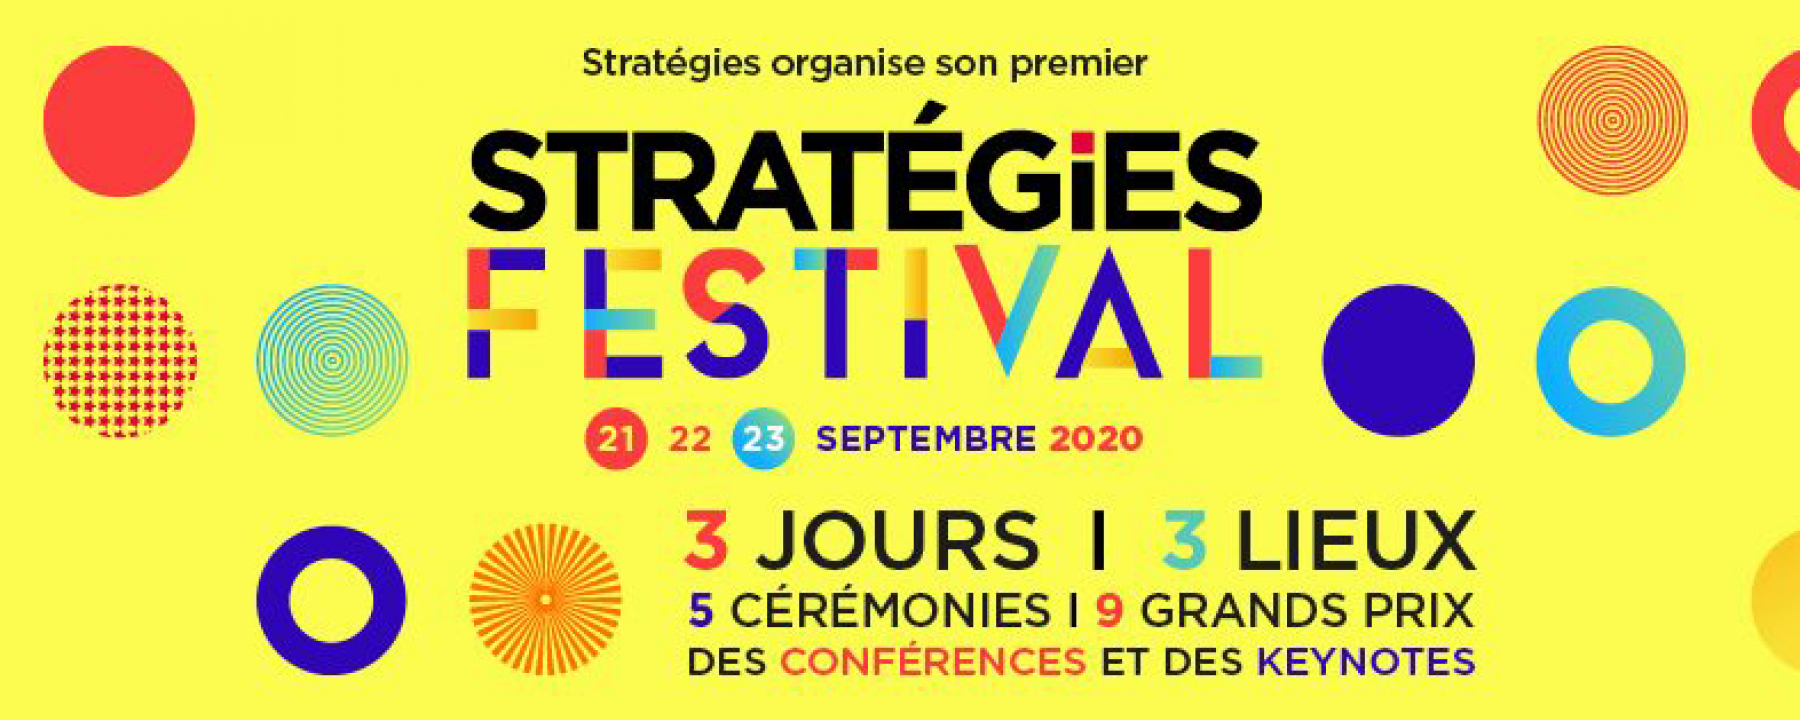 Stratégies Festival 2020, les 21, 22 et 23 septembre 2020, organisé par Stratégies 